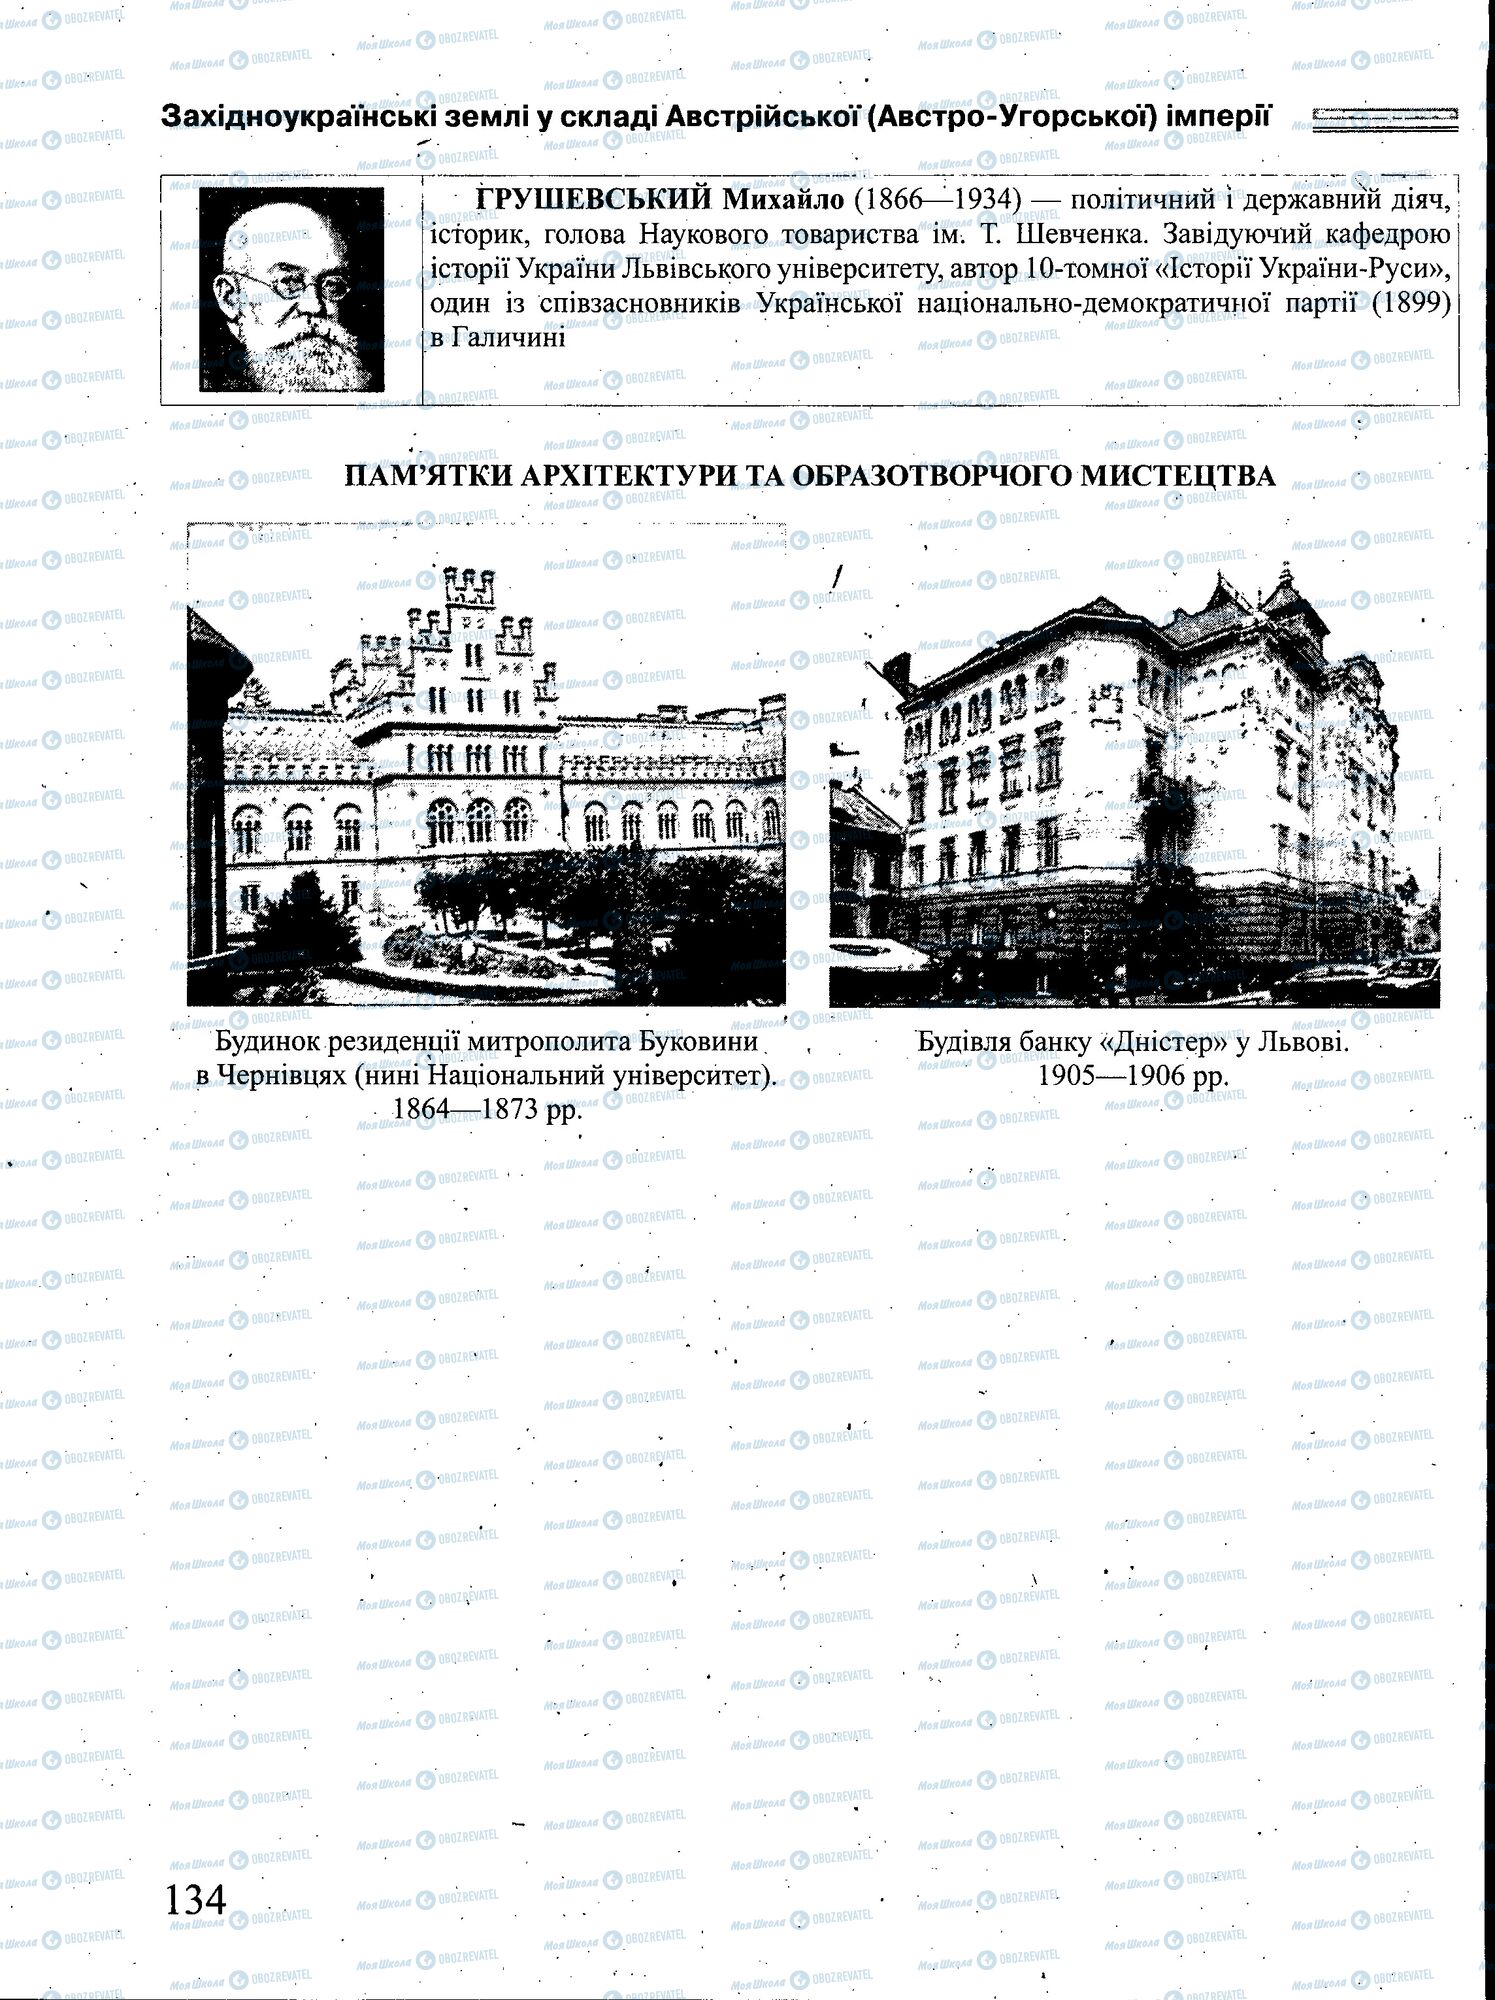 ЗНО История Украины 11 класс страница 134